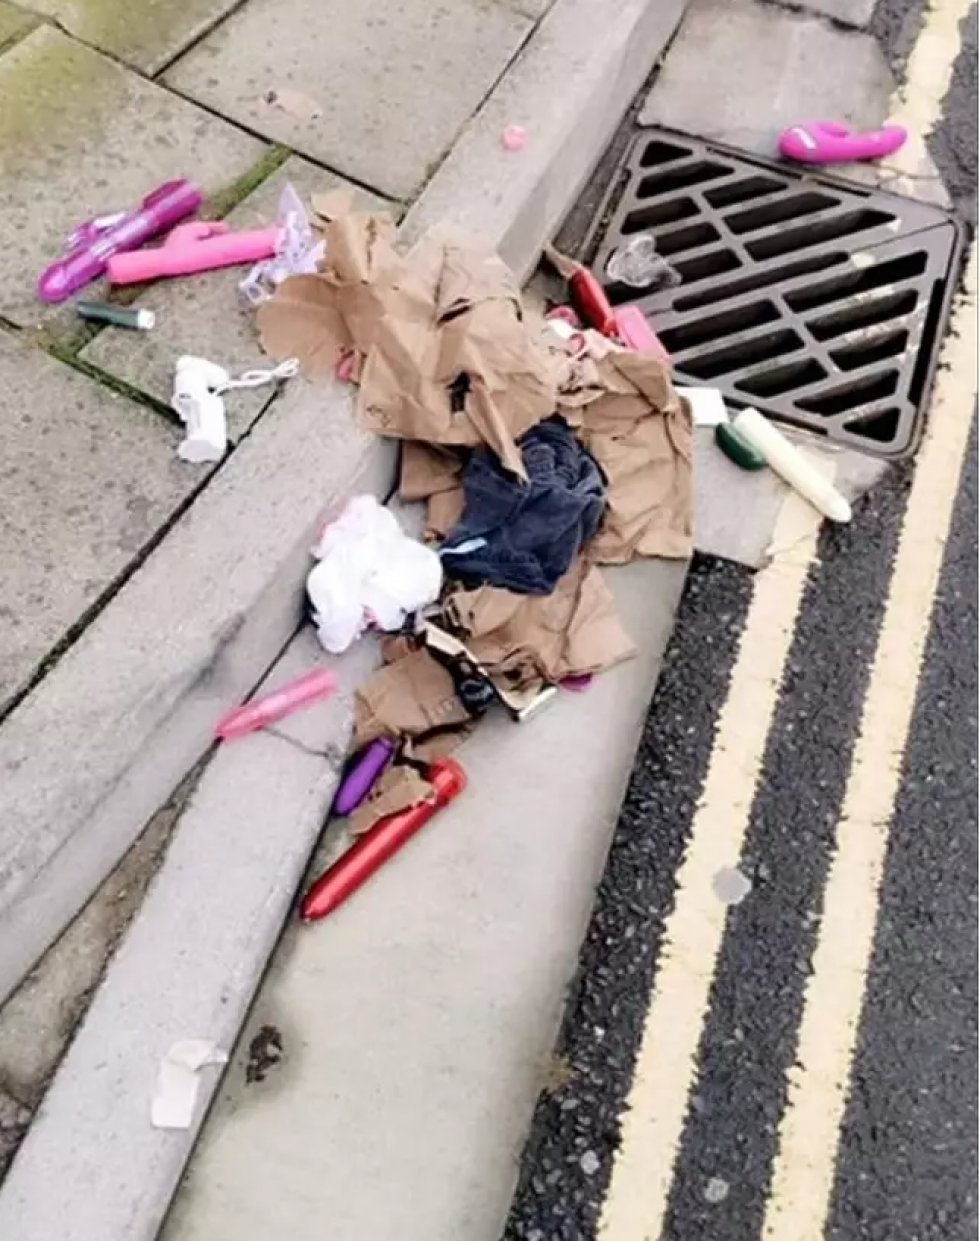 Ukendt person har tabt sin kæmpepose med dildoer på gaden